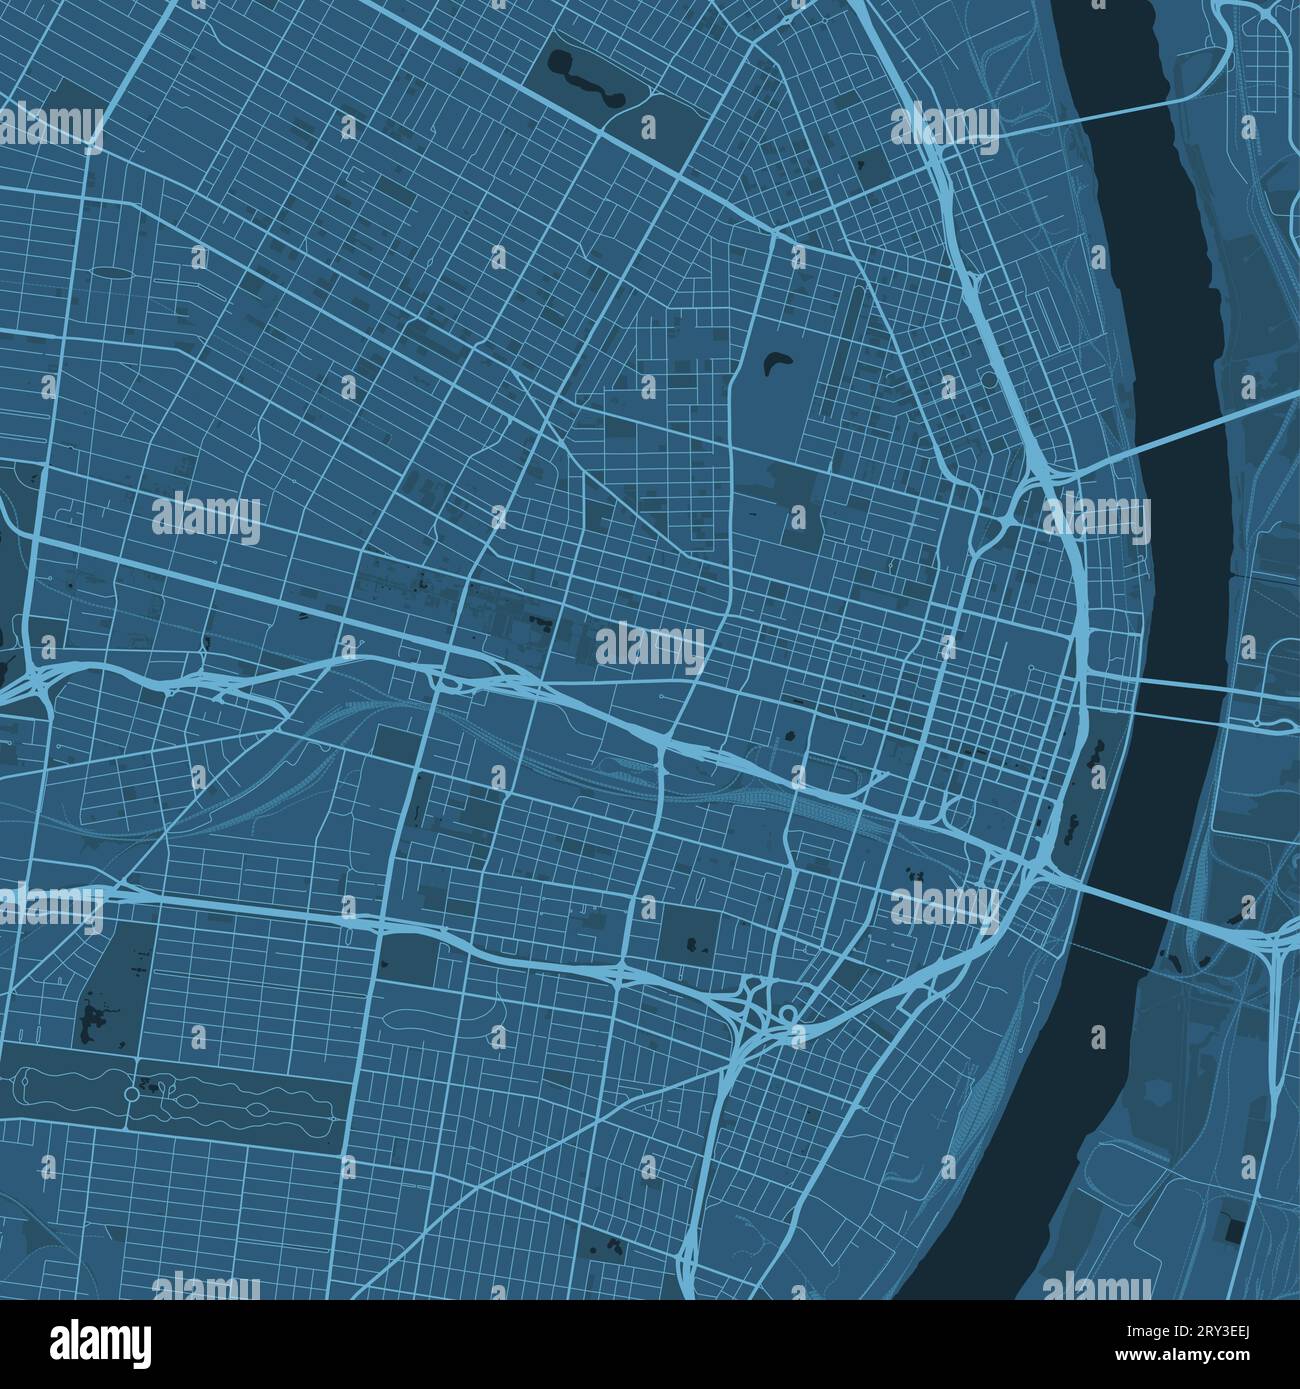 Blue St. Carte de Louis, Missouri, États-Unis, carte détaillée de la municipalité, panorama Skyline. Carte touristique graphique décorative de St. Territoire Louis. Royal Illustration de Vecteur